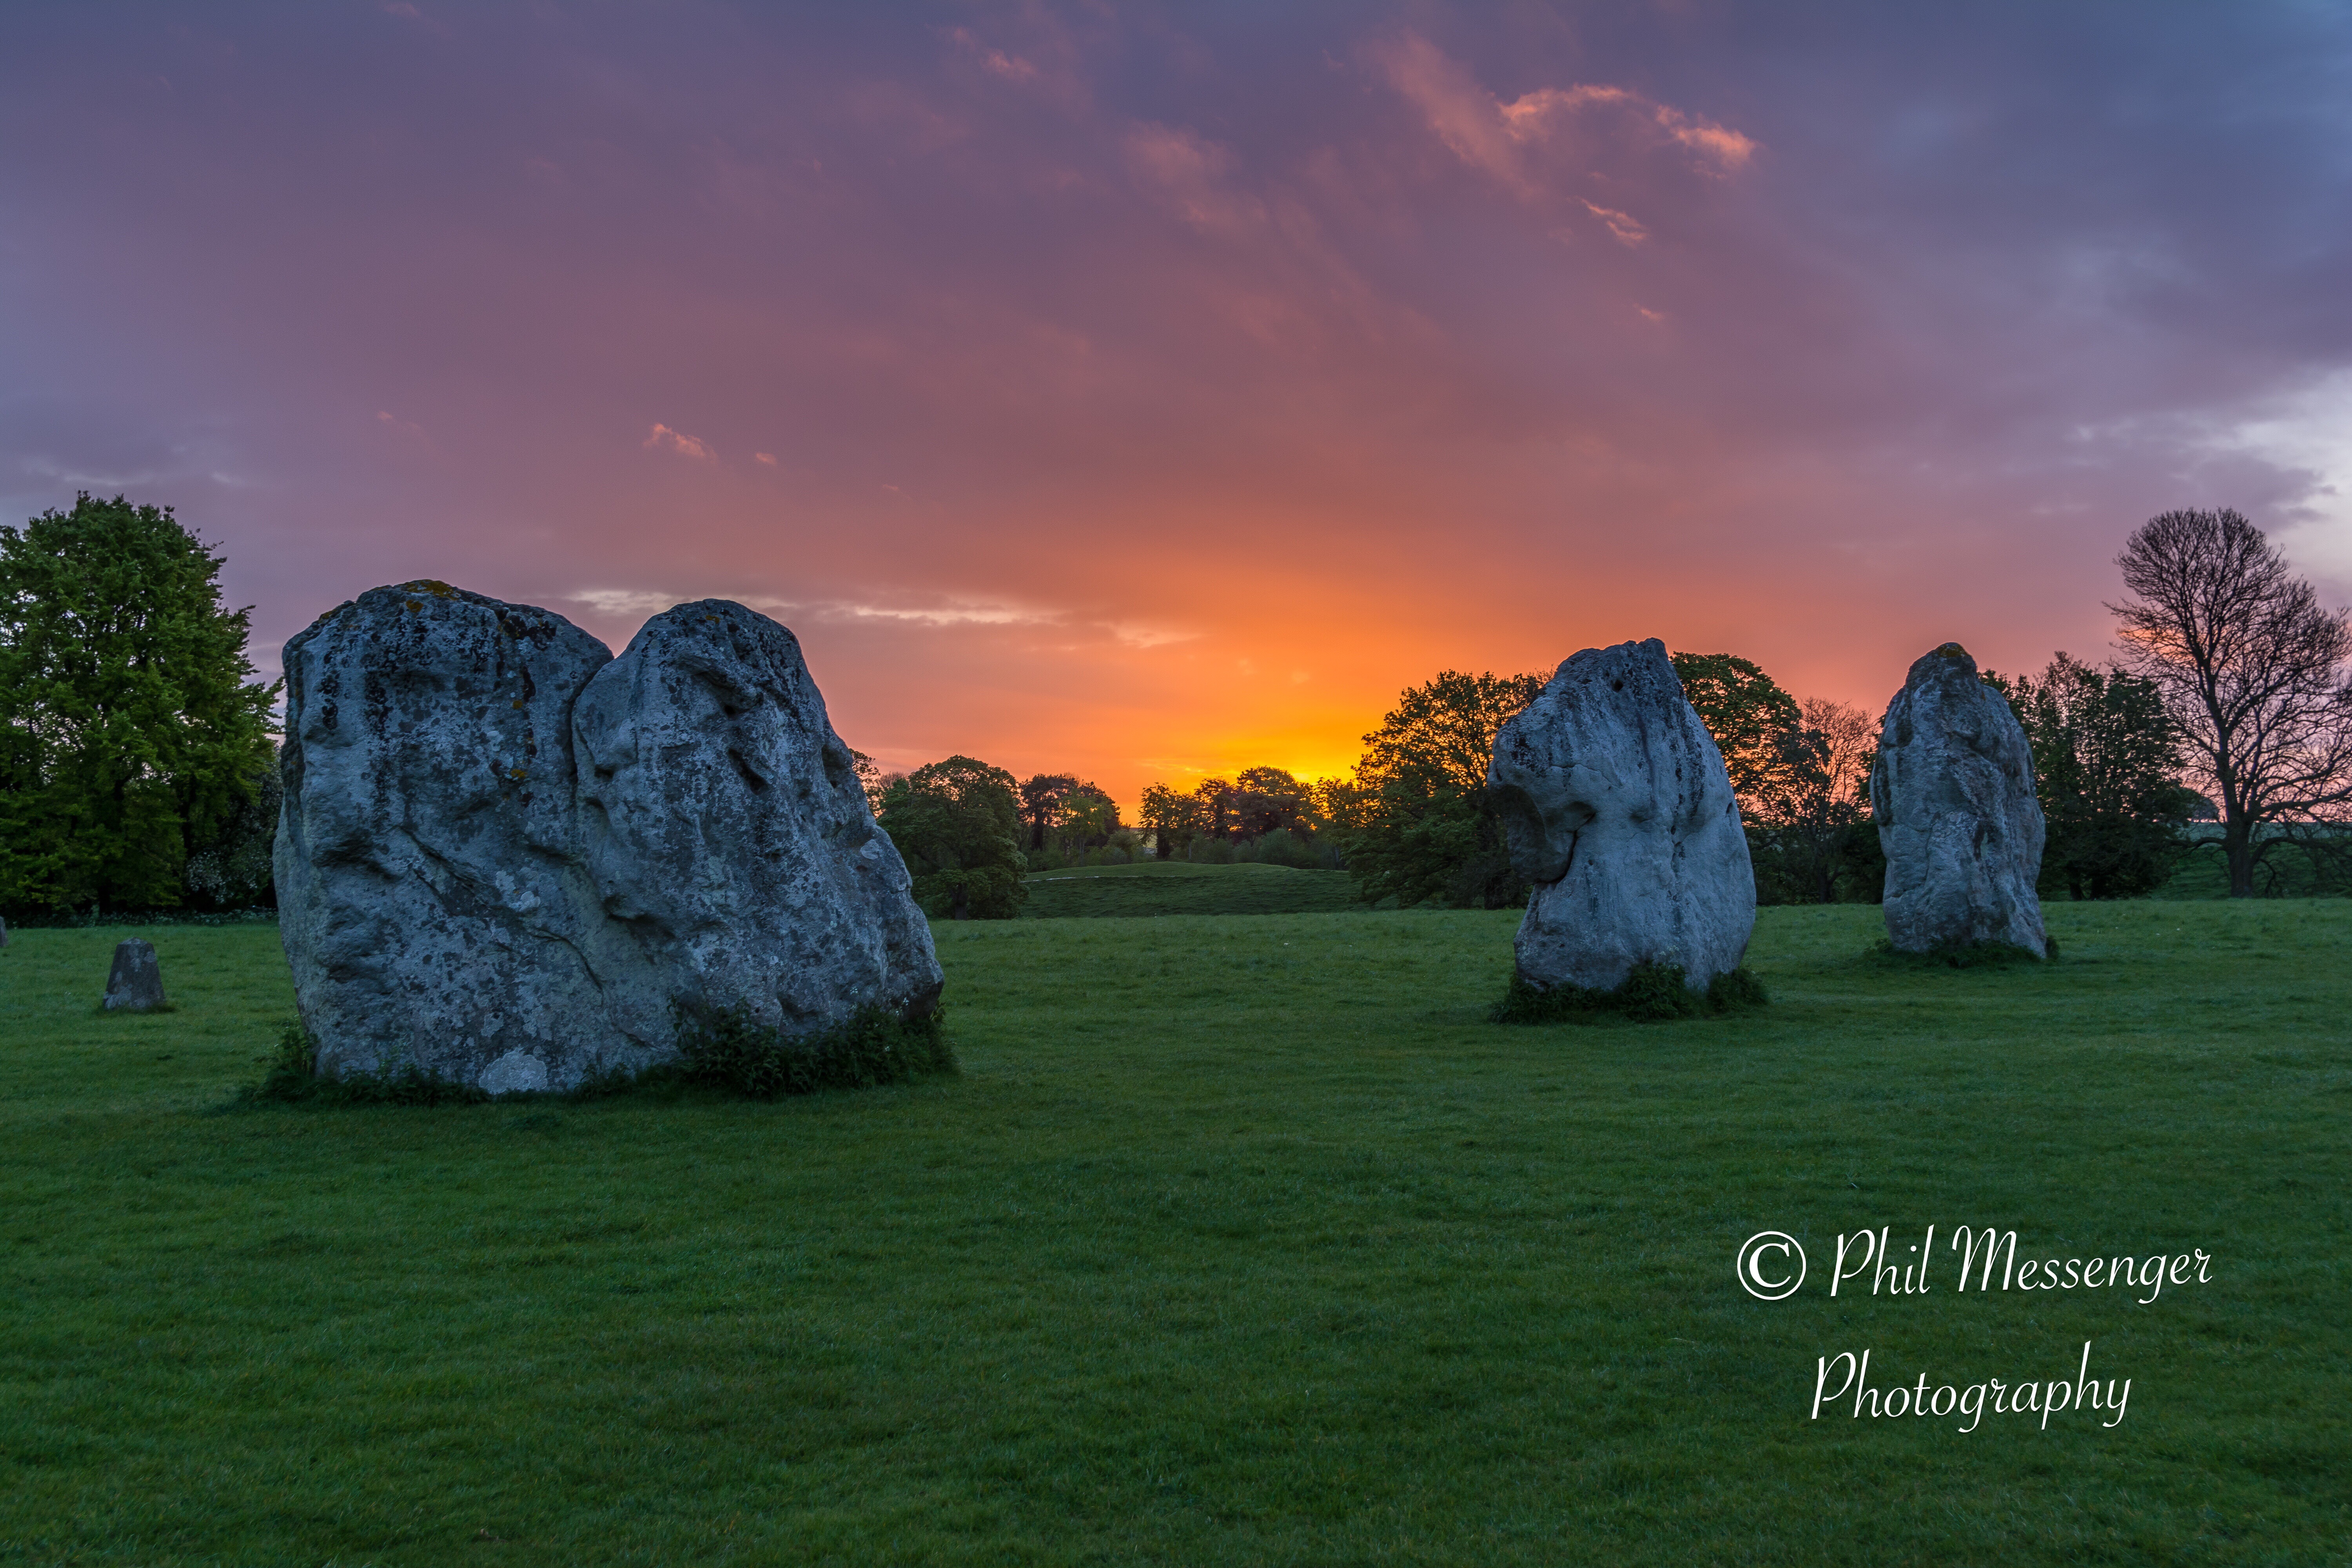 Early morning spring sunrise take at Avebury stone circle, Wiltshire, England.